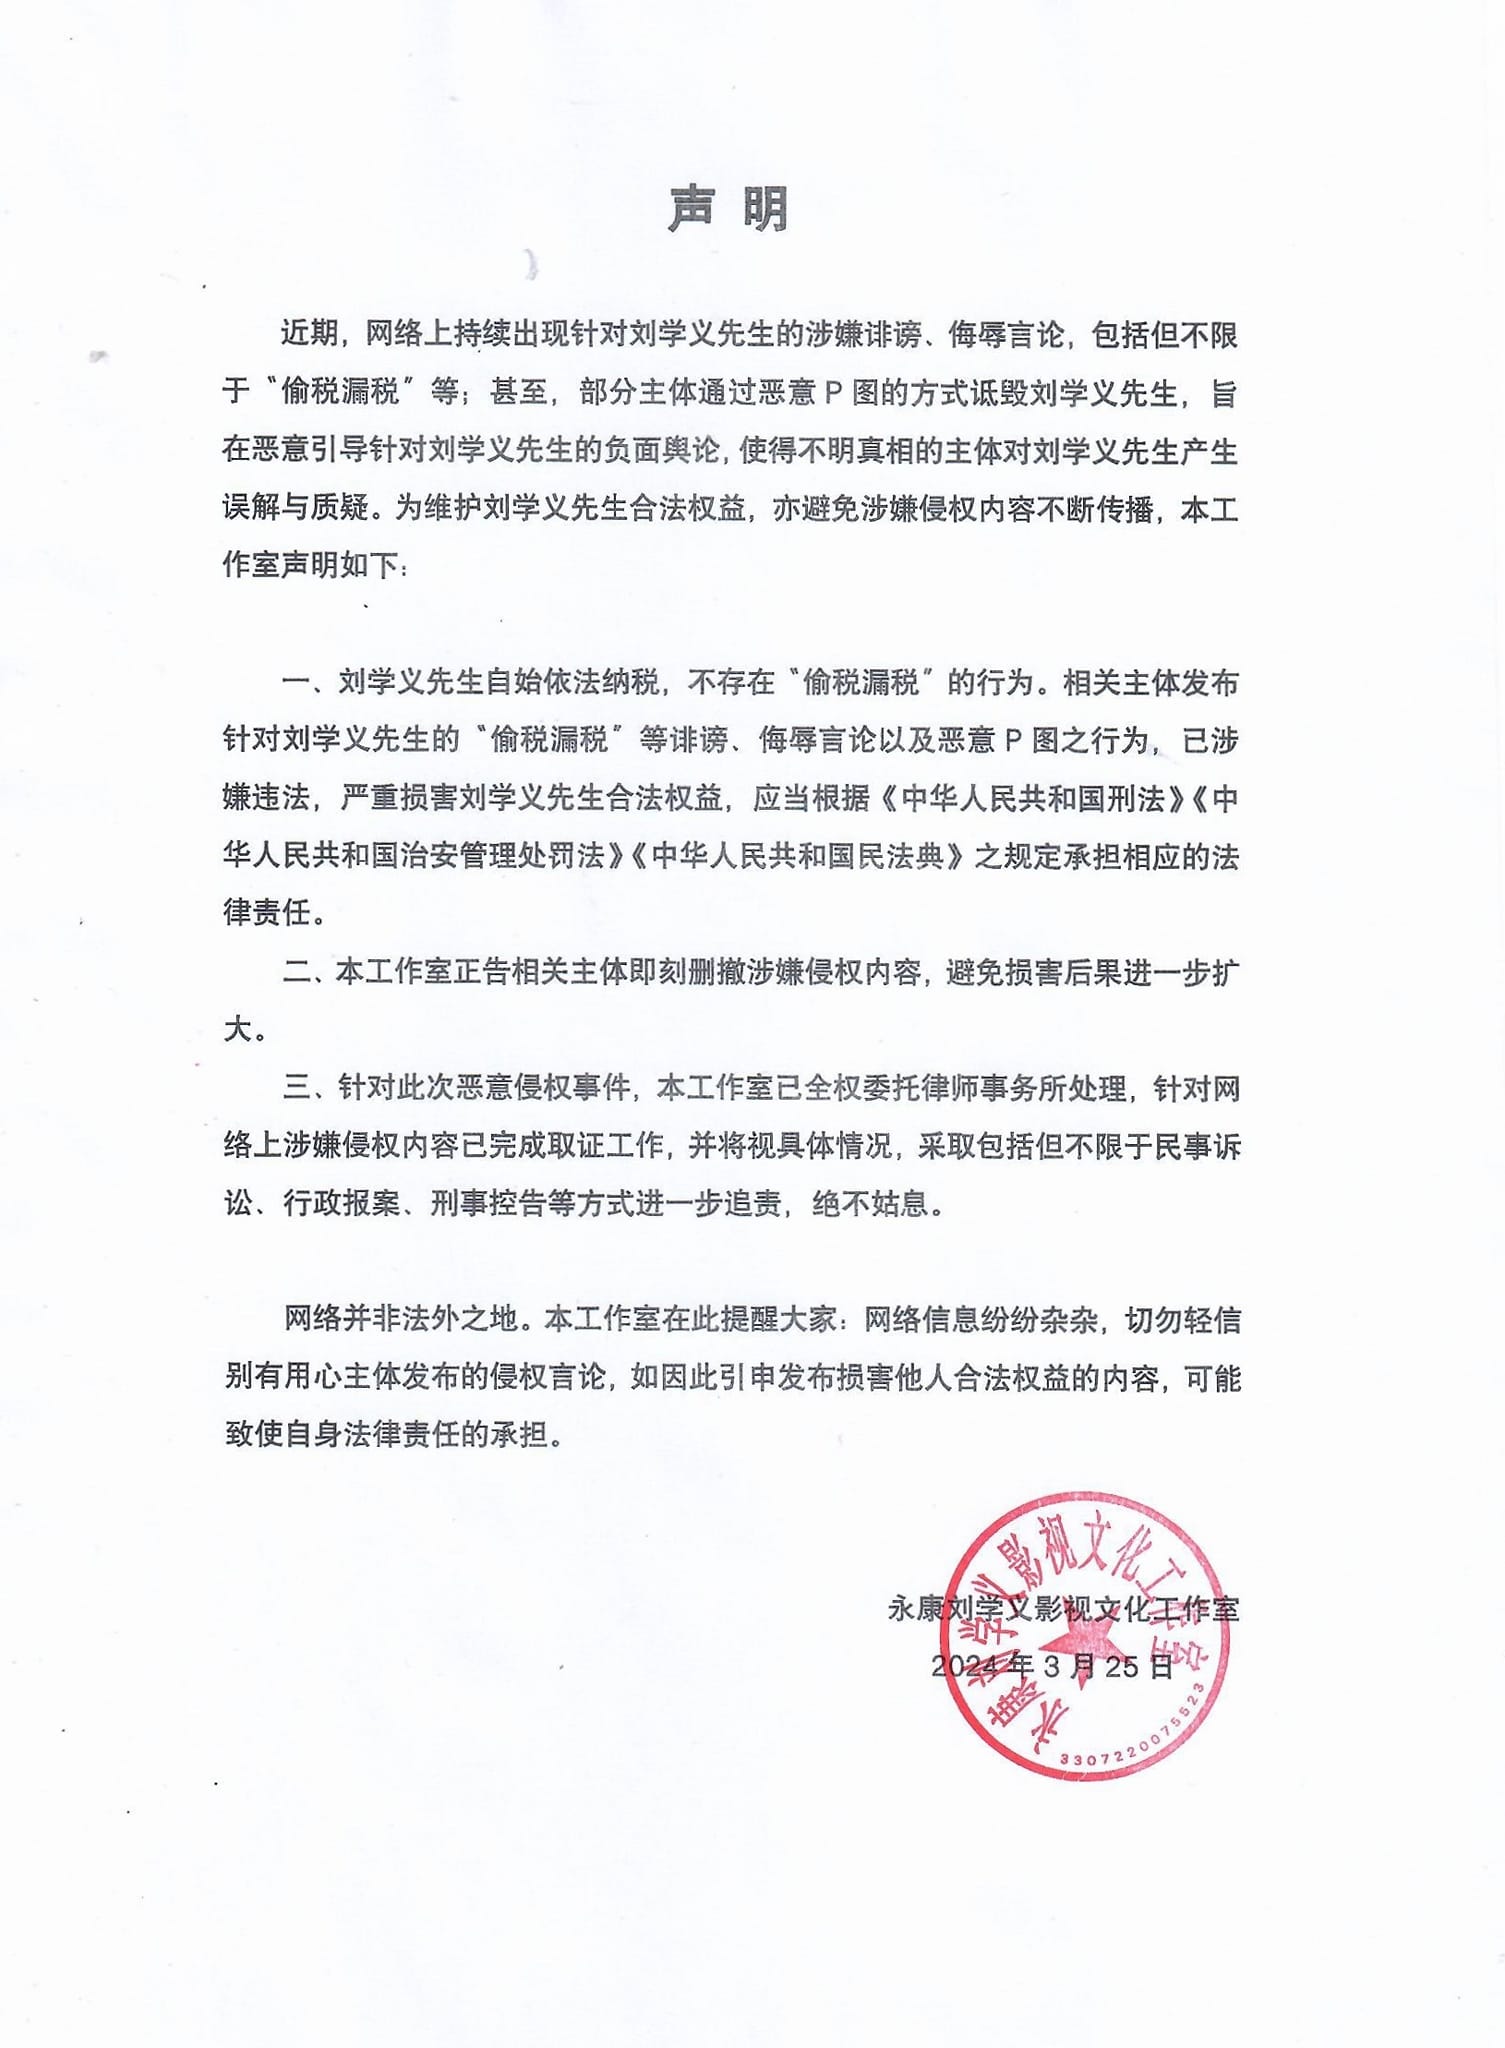 Phòng làm việc của Lưu Học Nghĩa ra văn bản phủ nhận và sẽ kiện nếu không xóa những thông tin sai sự thật